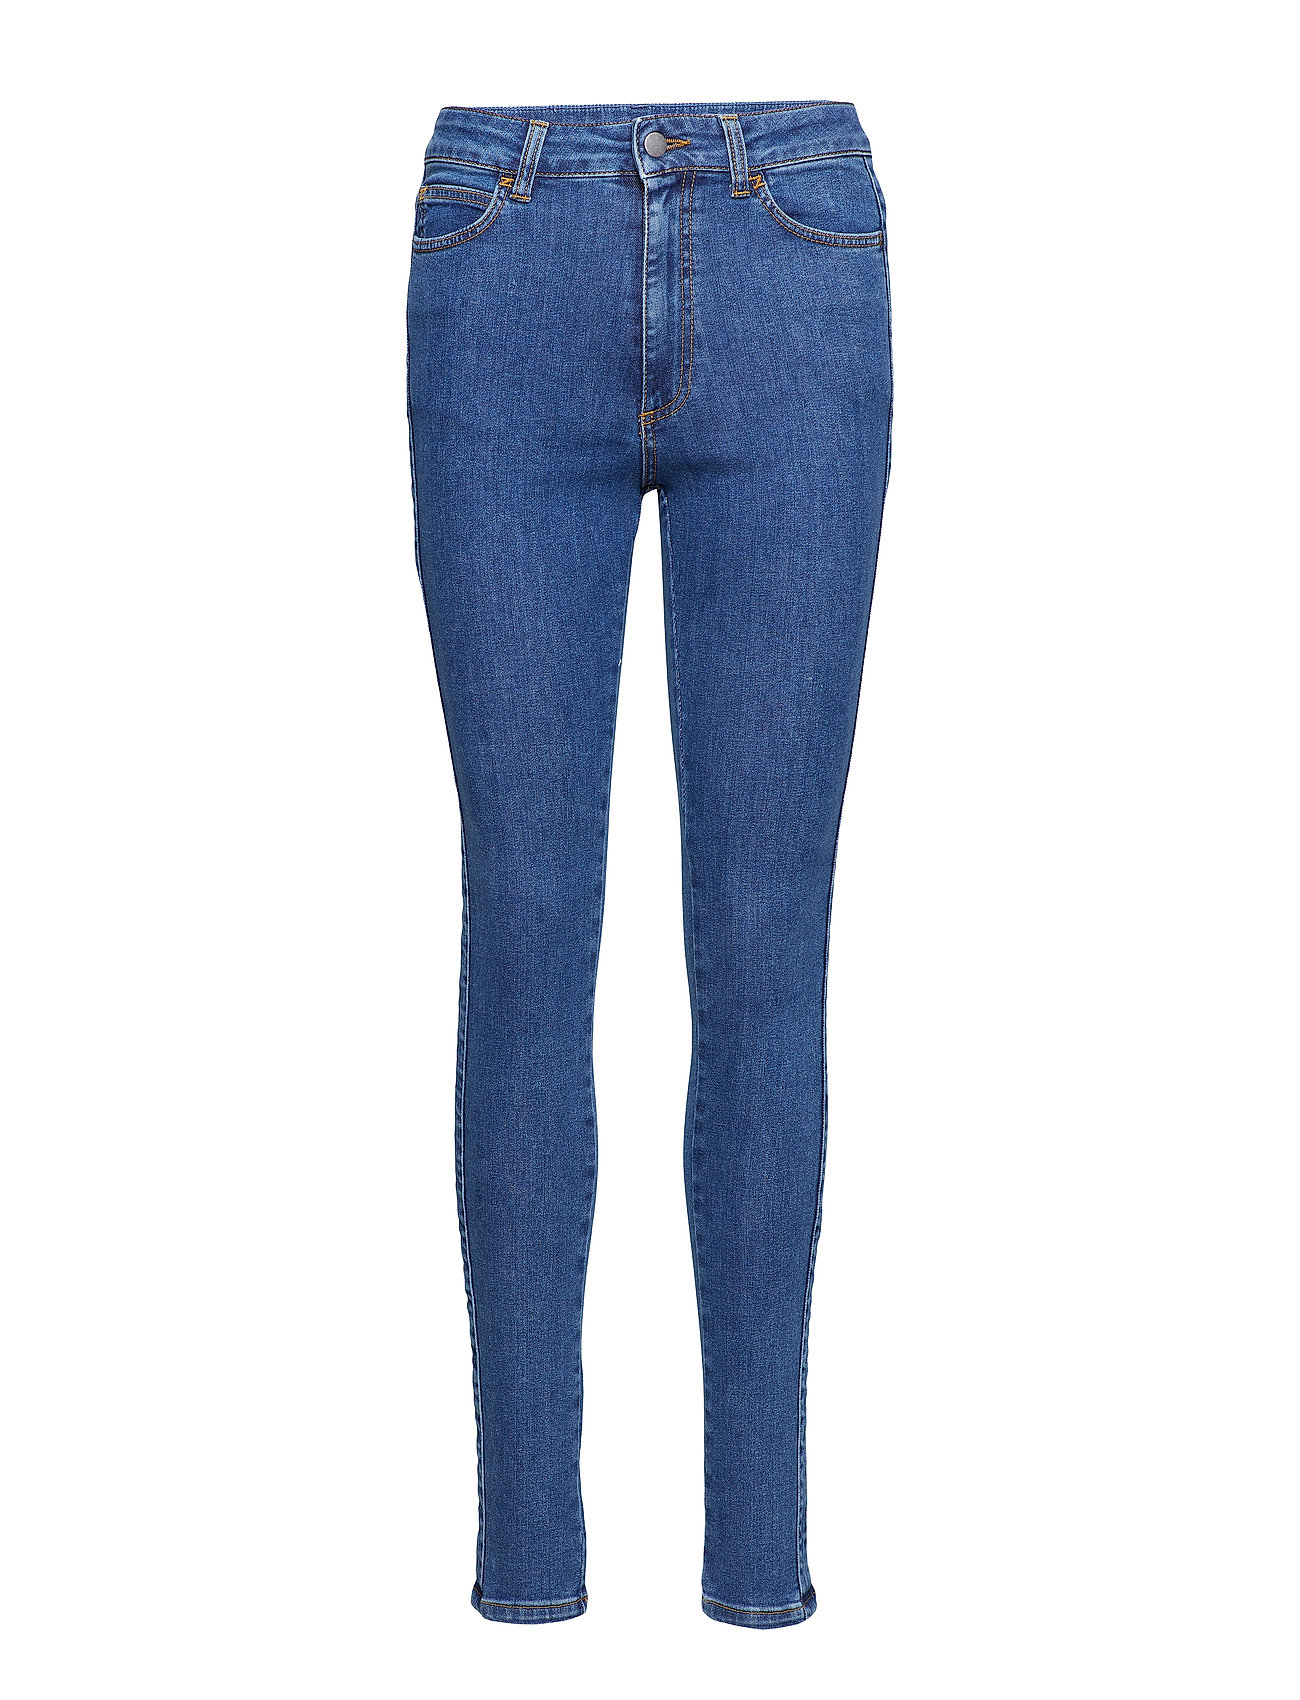 casaquinhos jeans femininos